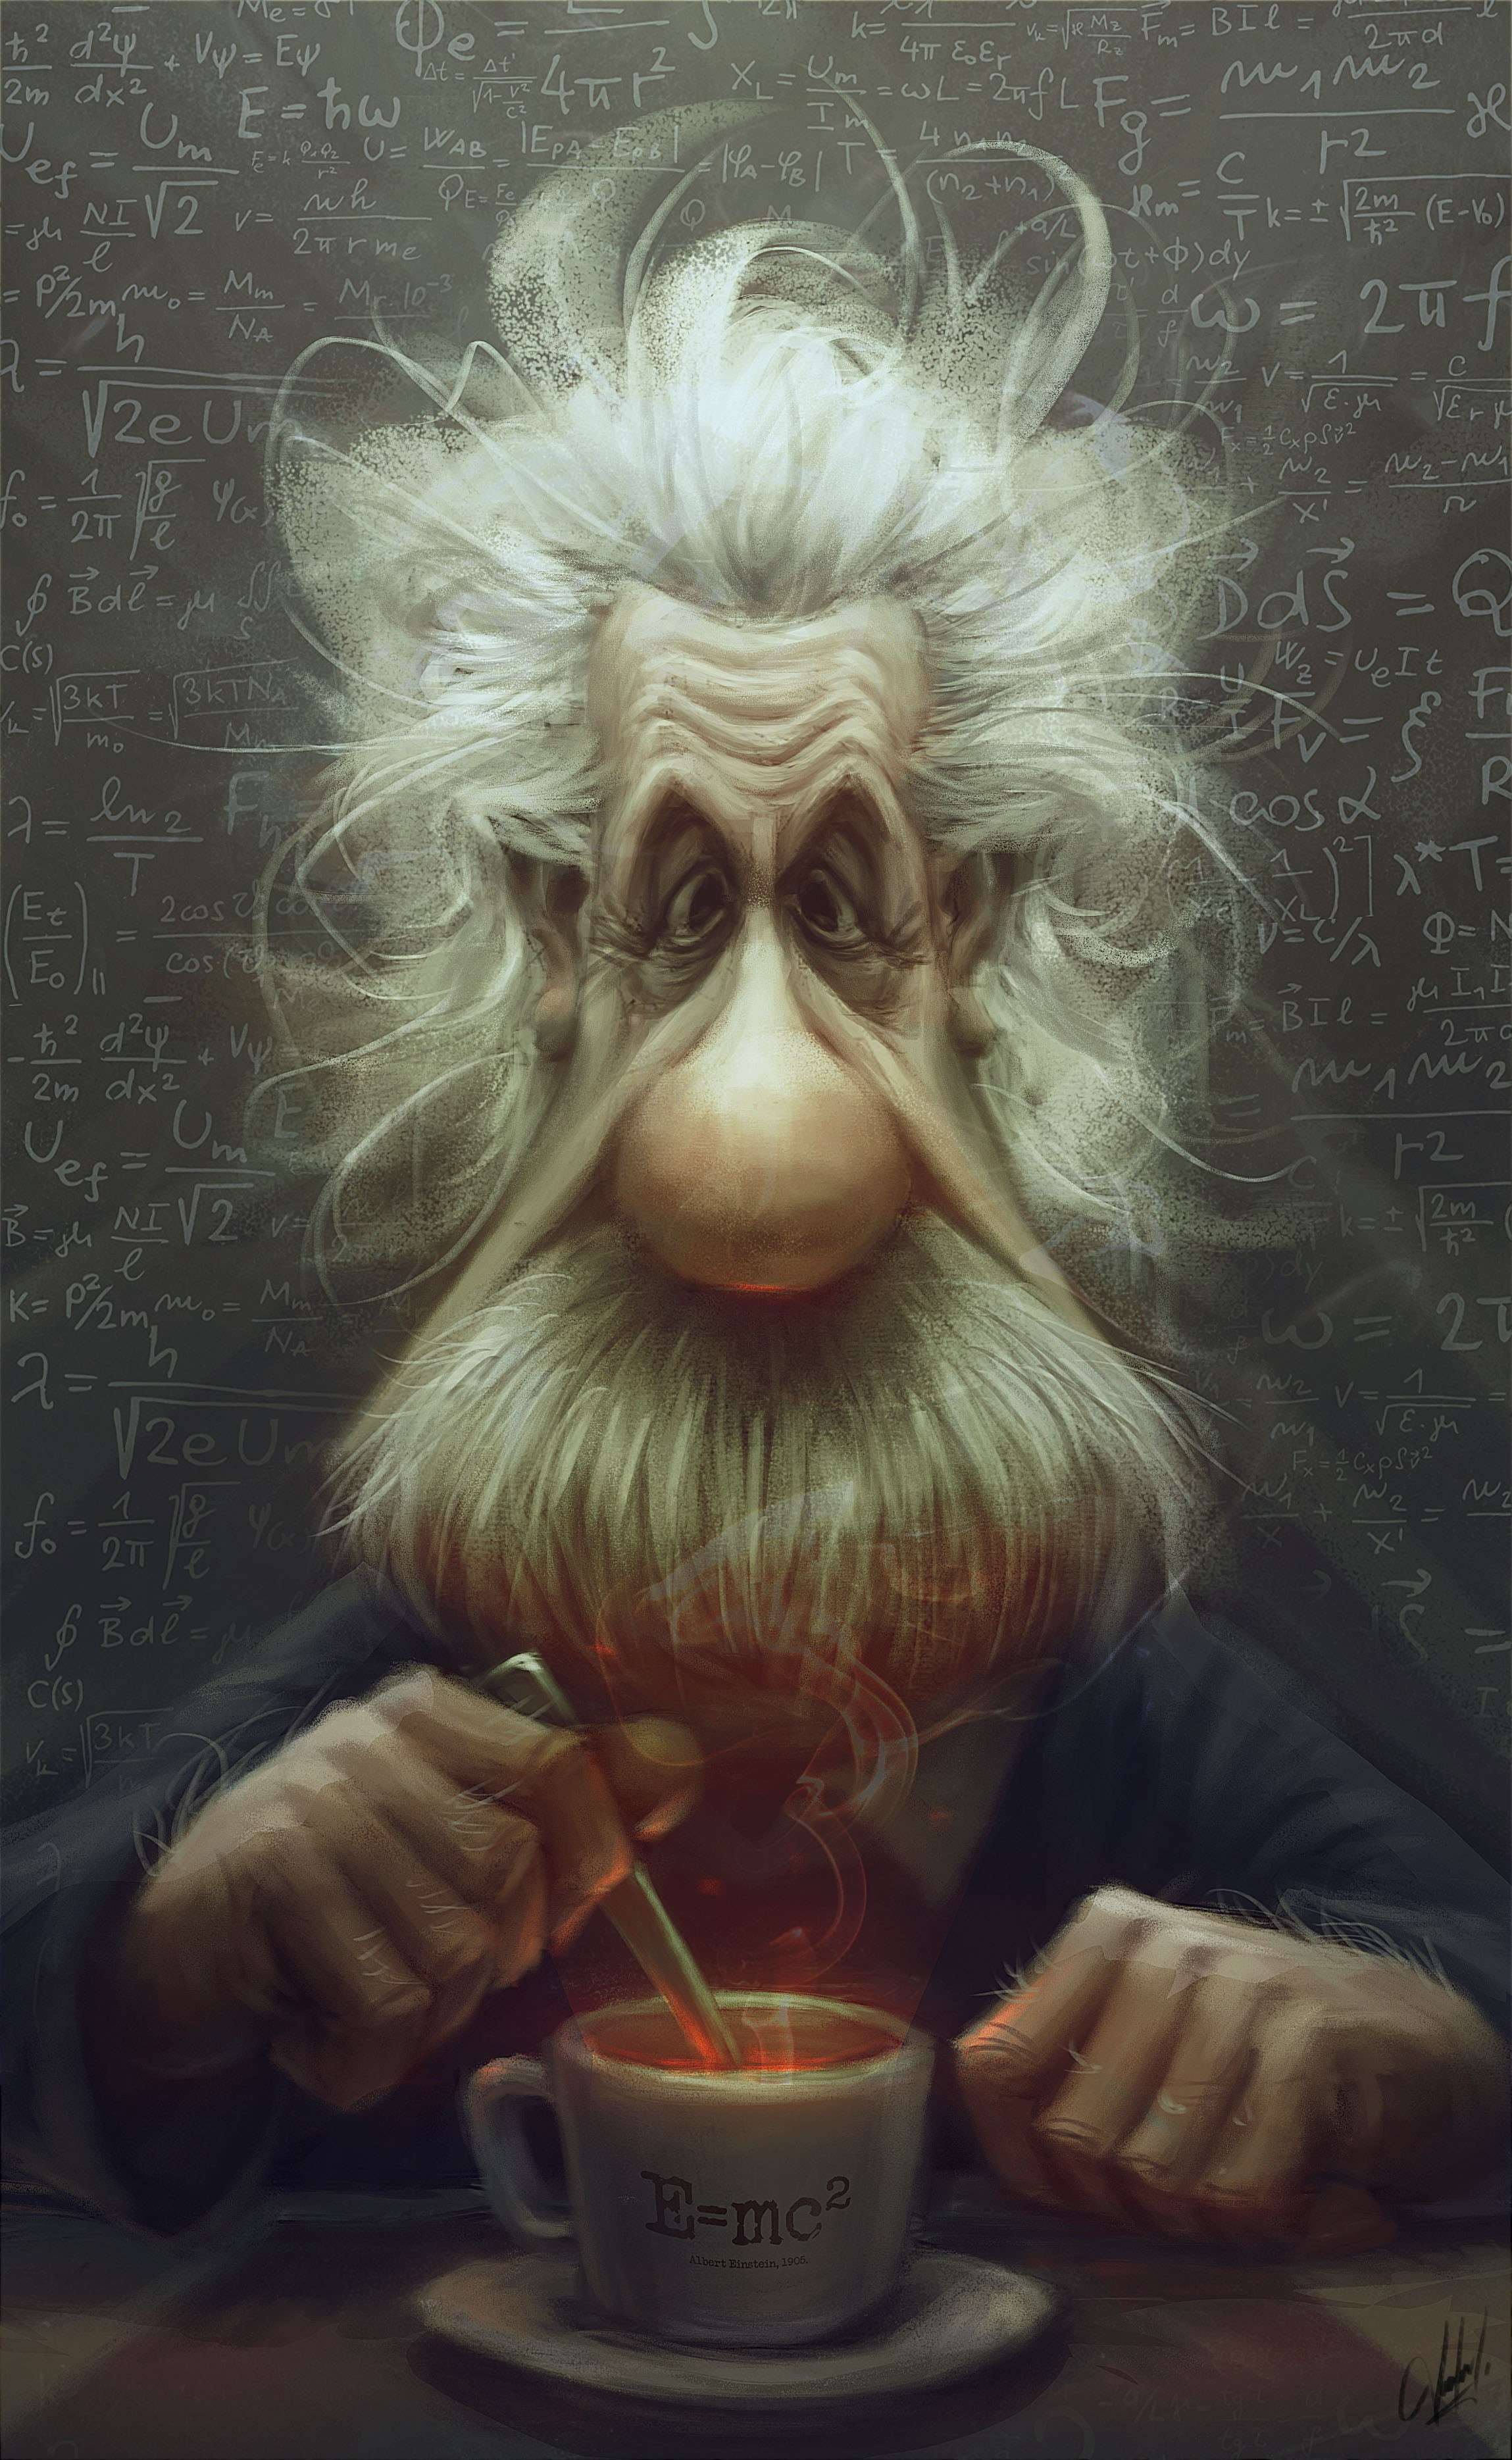 Albert Einstein, Caricature, Cartoon, Formula